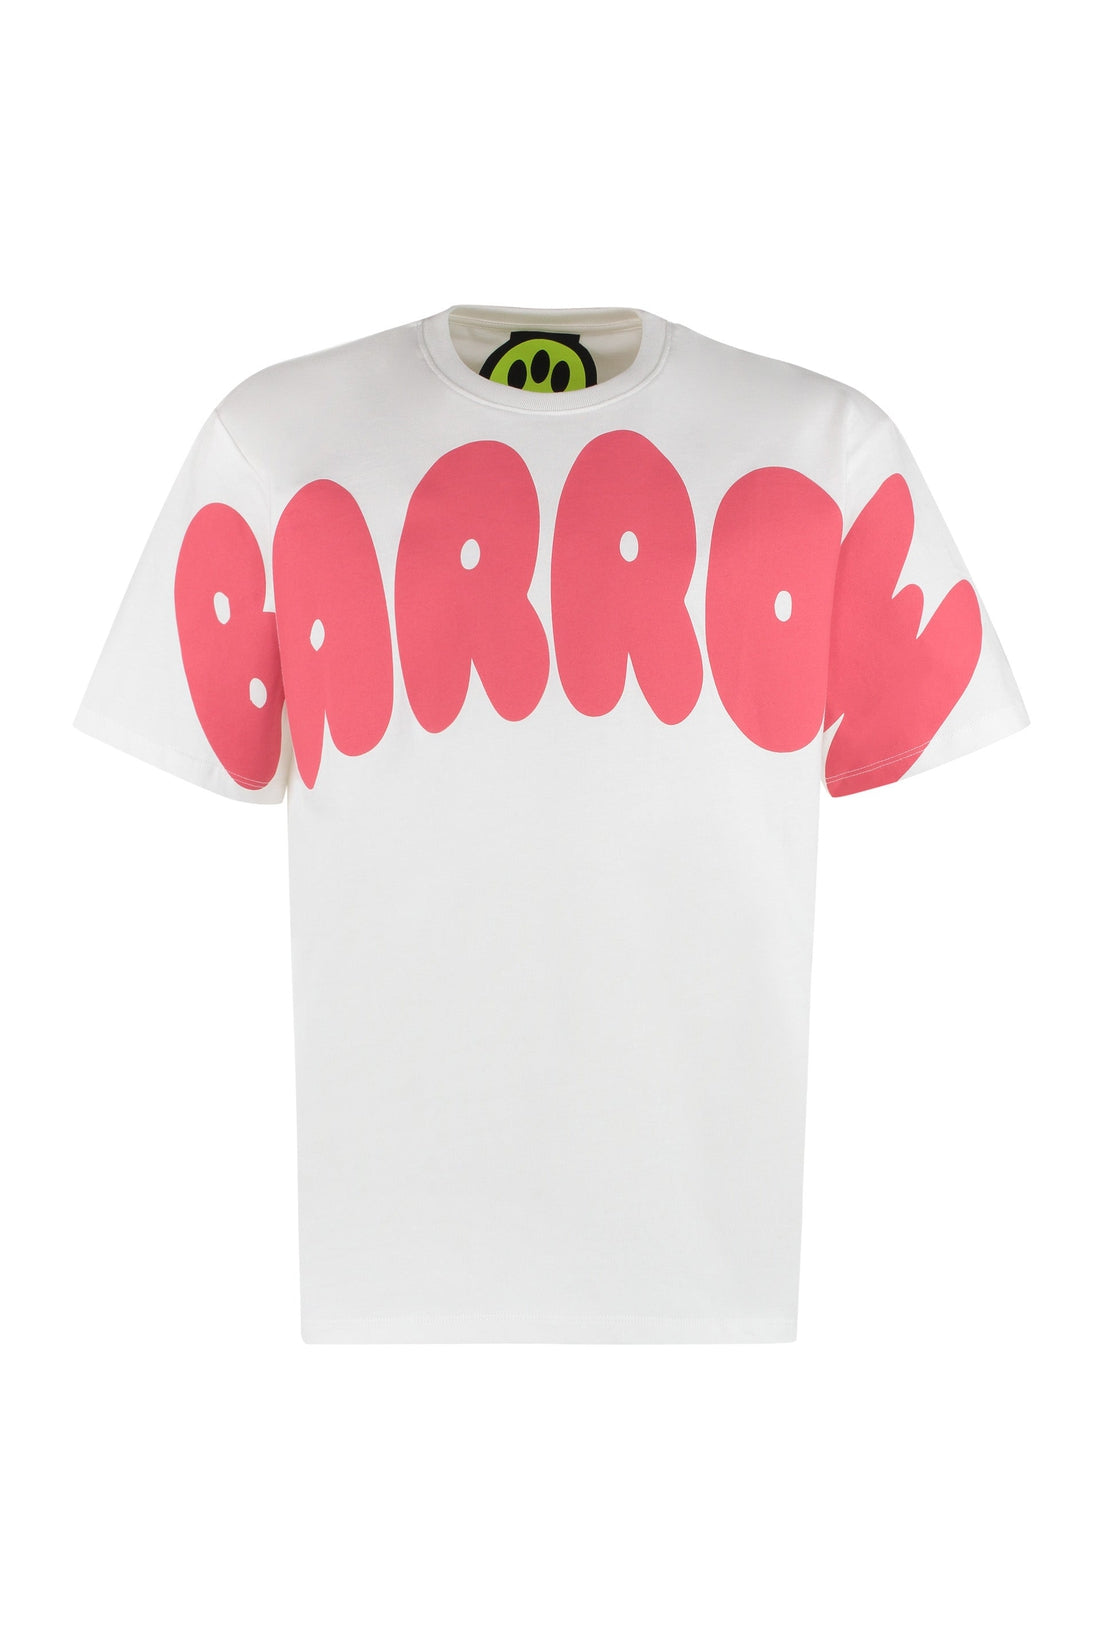 Barrow-OUTLET-SALE-Printed cotton T-shirt-ARCHIVIST